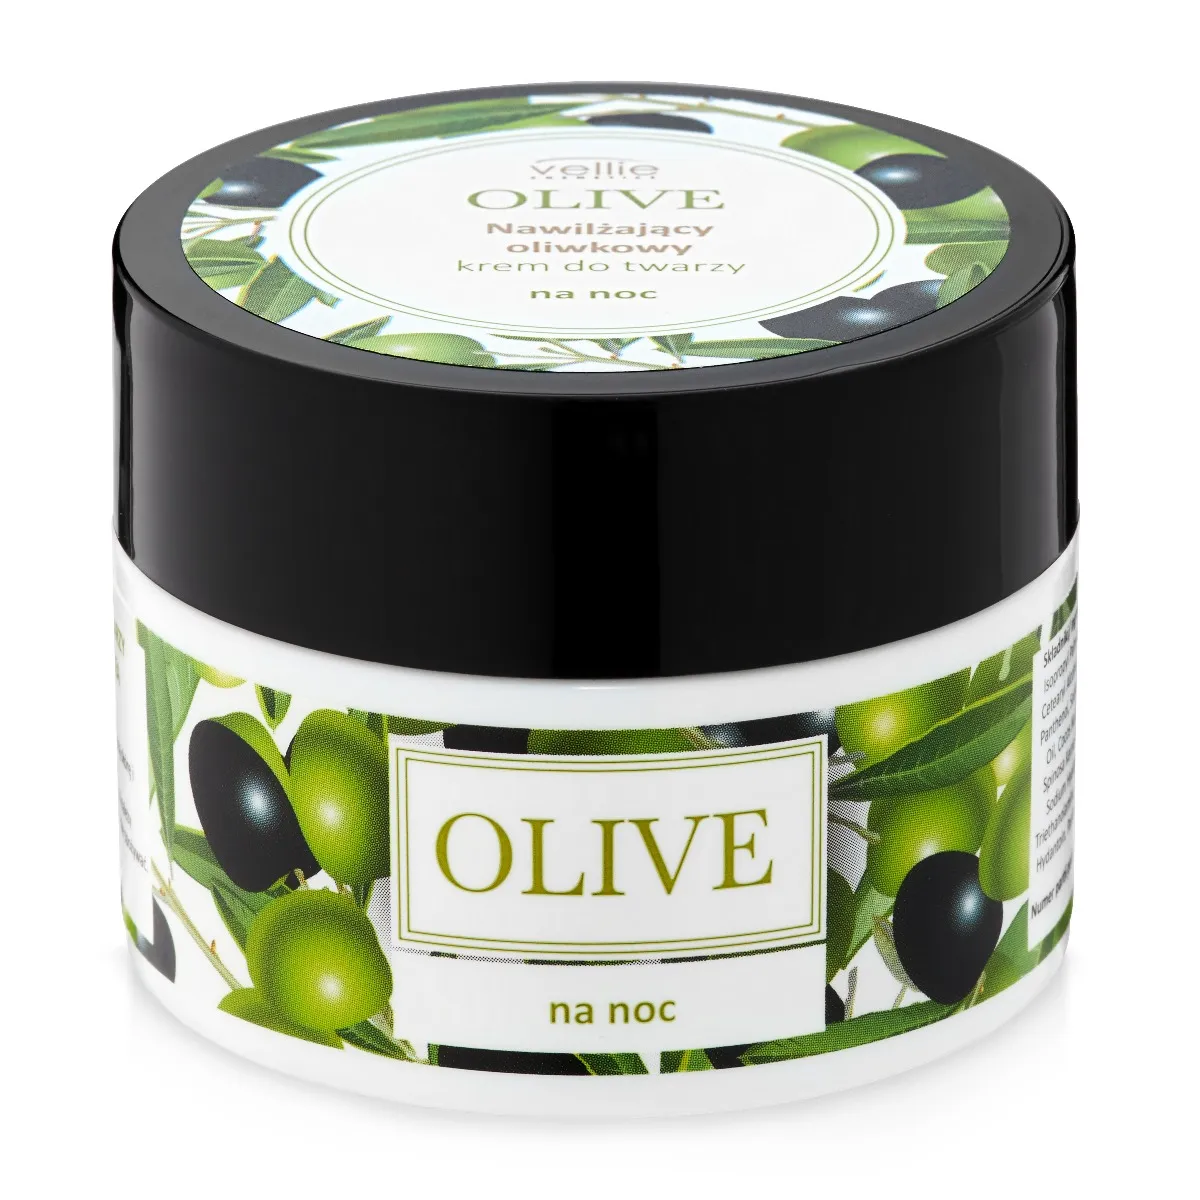 Vellie Olive nawilżający krem do twarzy na noc, 50 ml